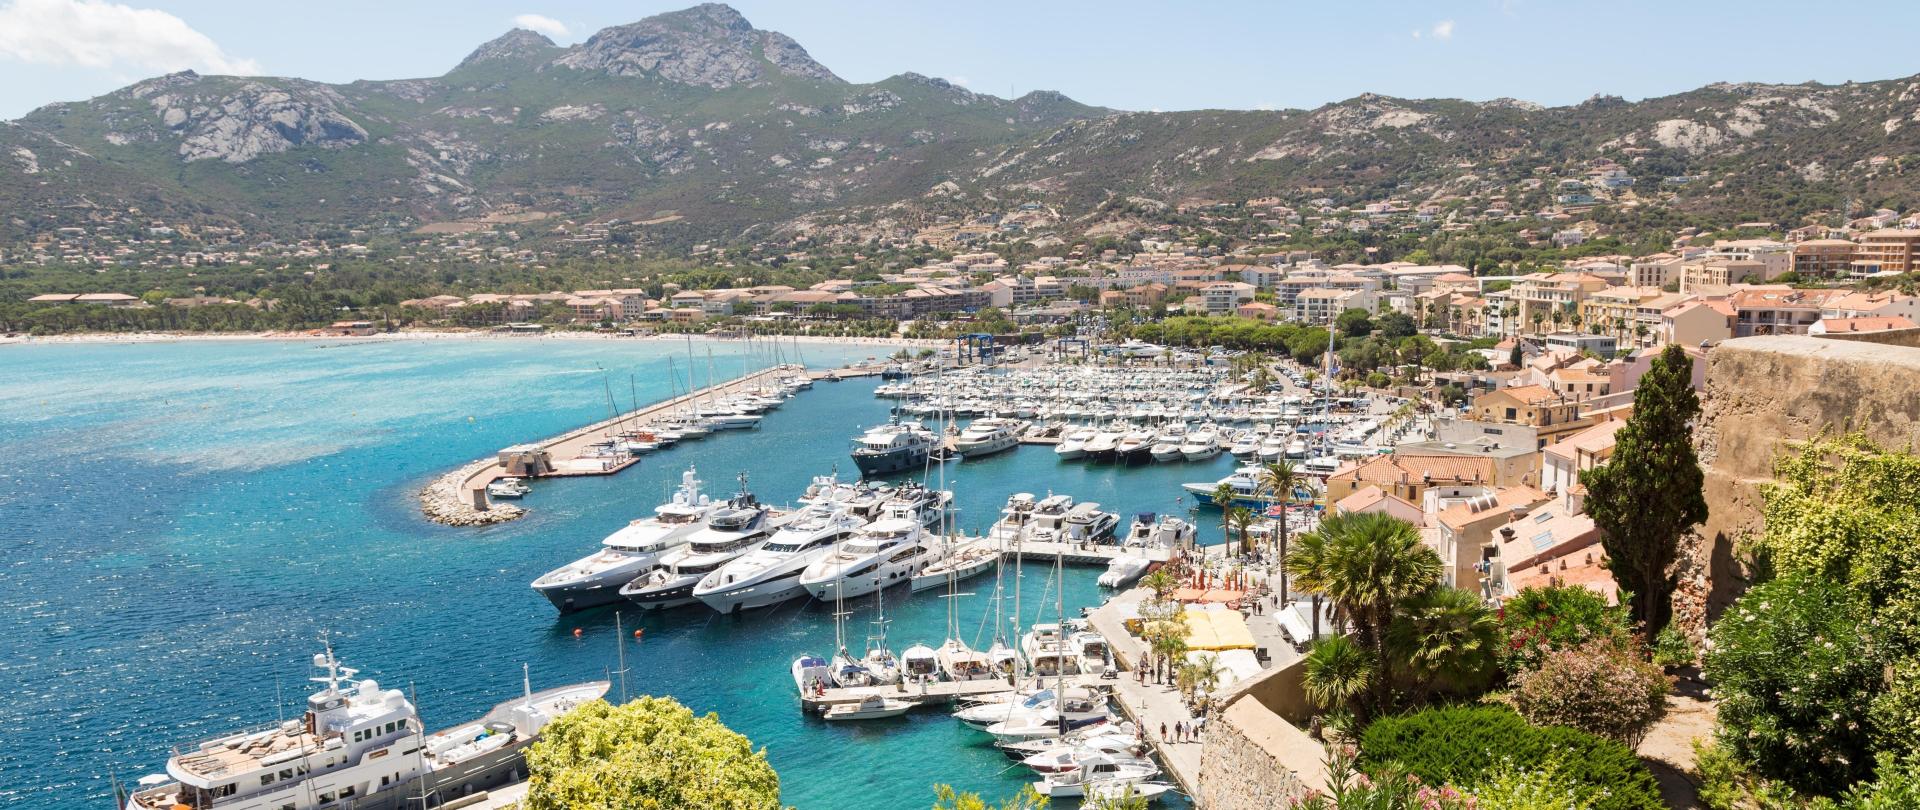 The marina in Calvi Corsica France v2